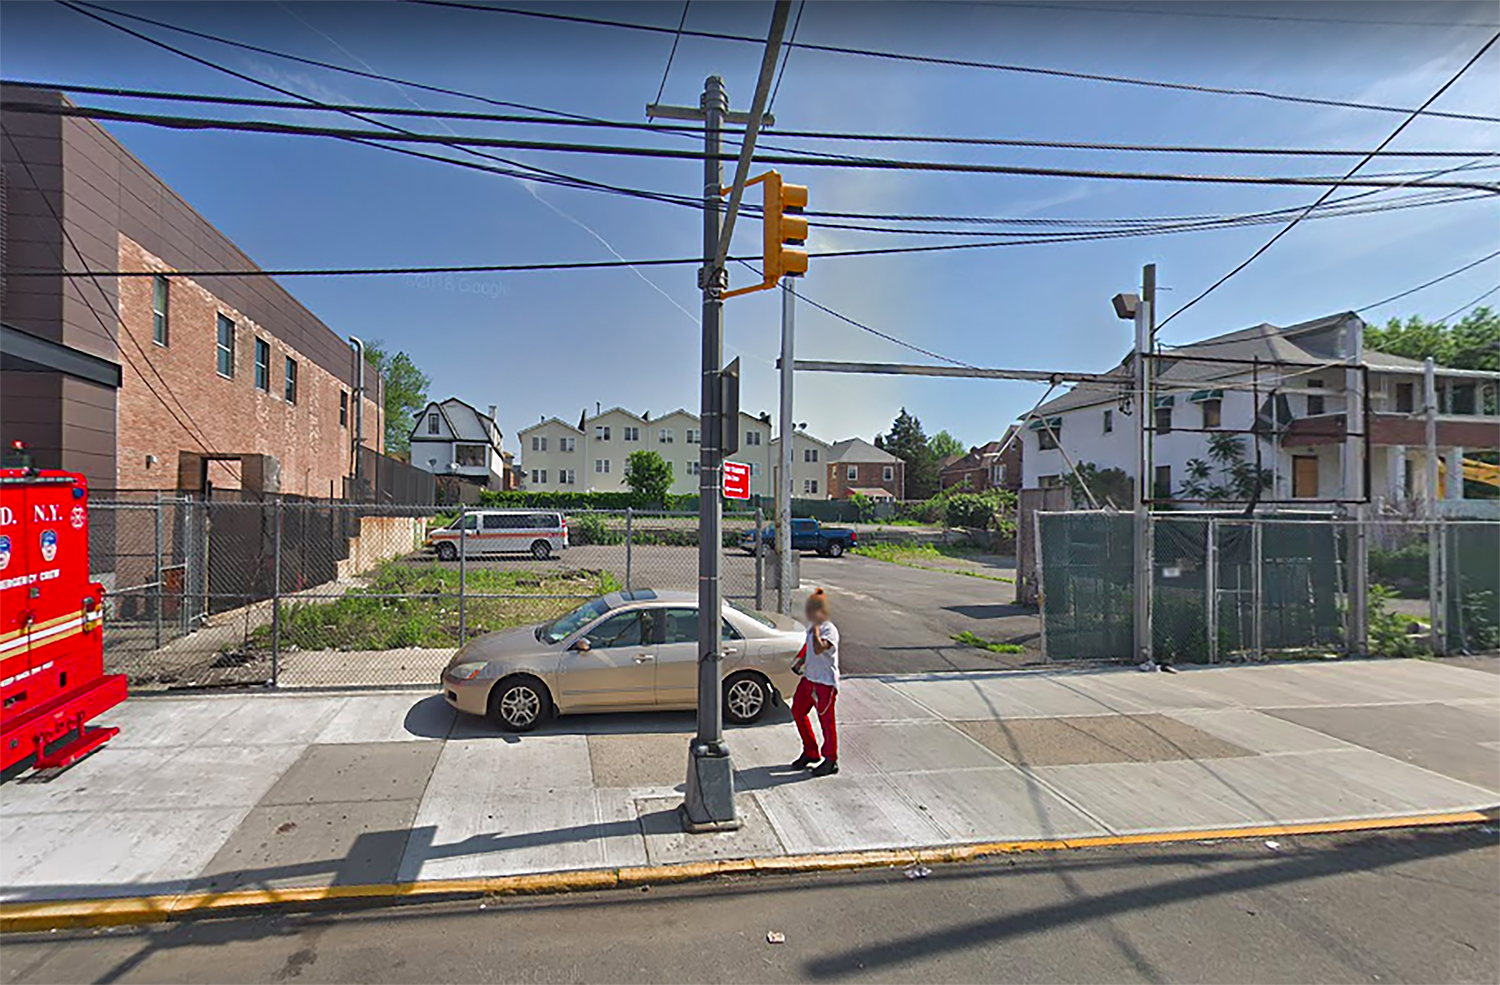 761 East 233rd Street in Wakefield, Bronx